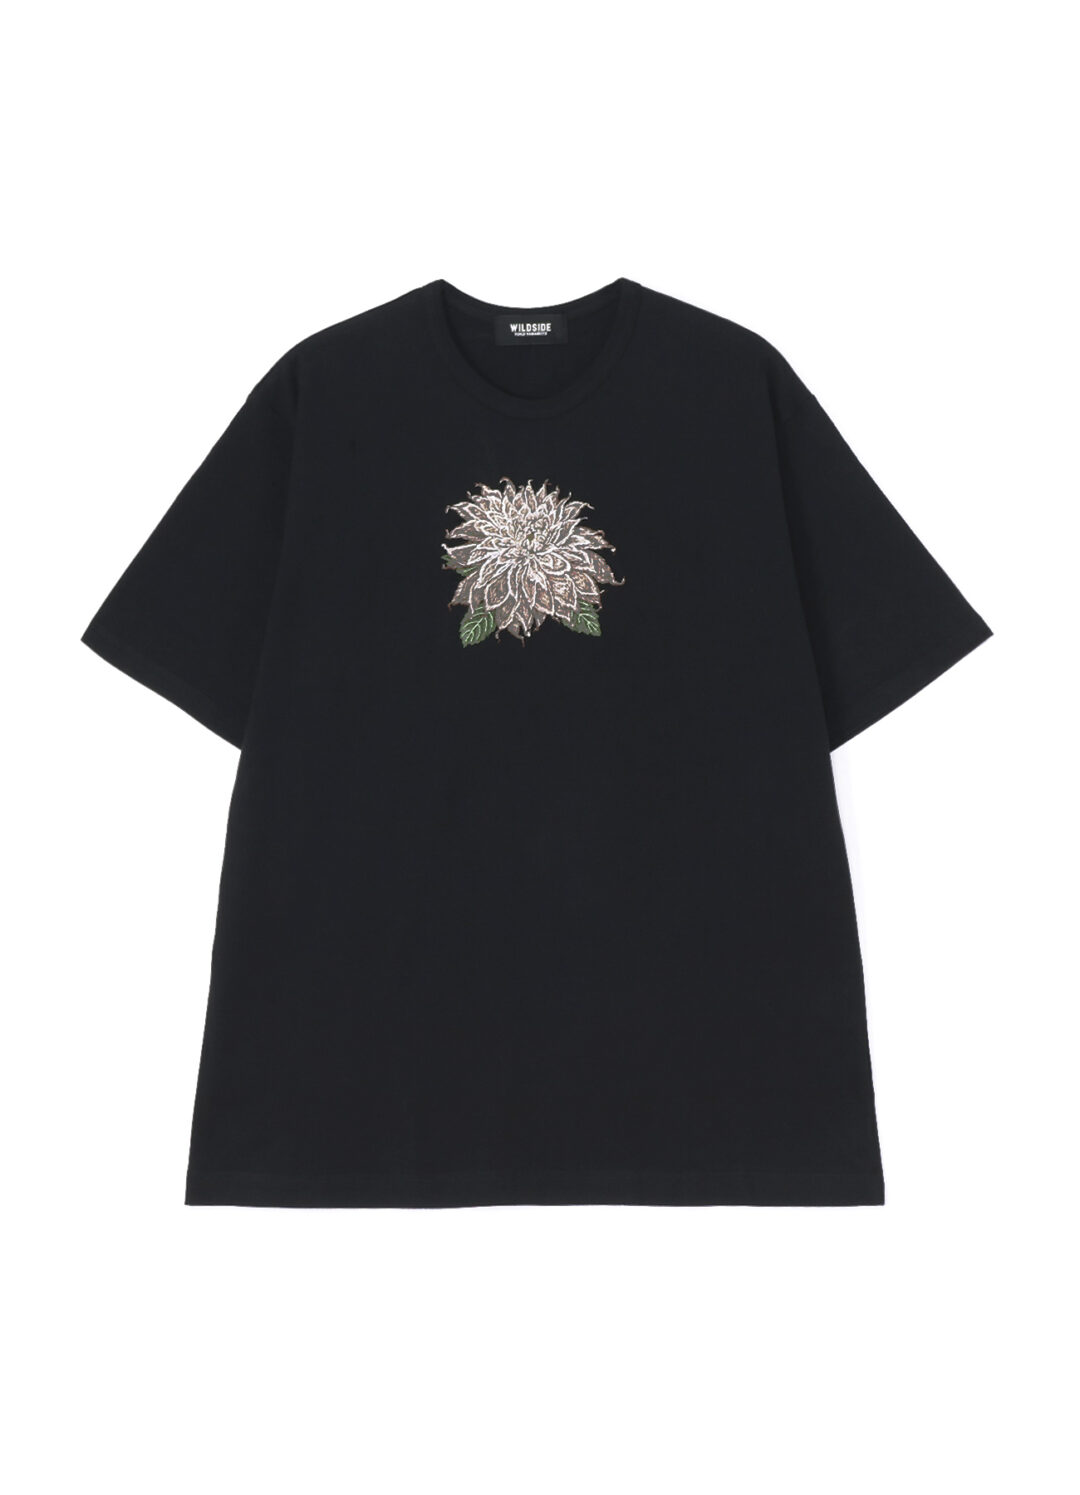 WILDSIDE YOHJI YAMAMOTO オリジナルライン 新作刺繍Tシャツ 